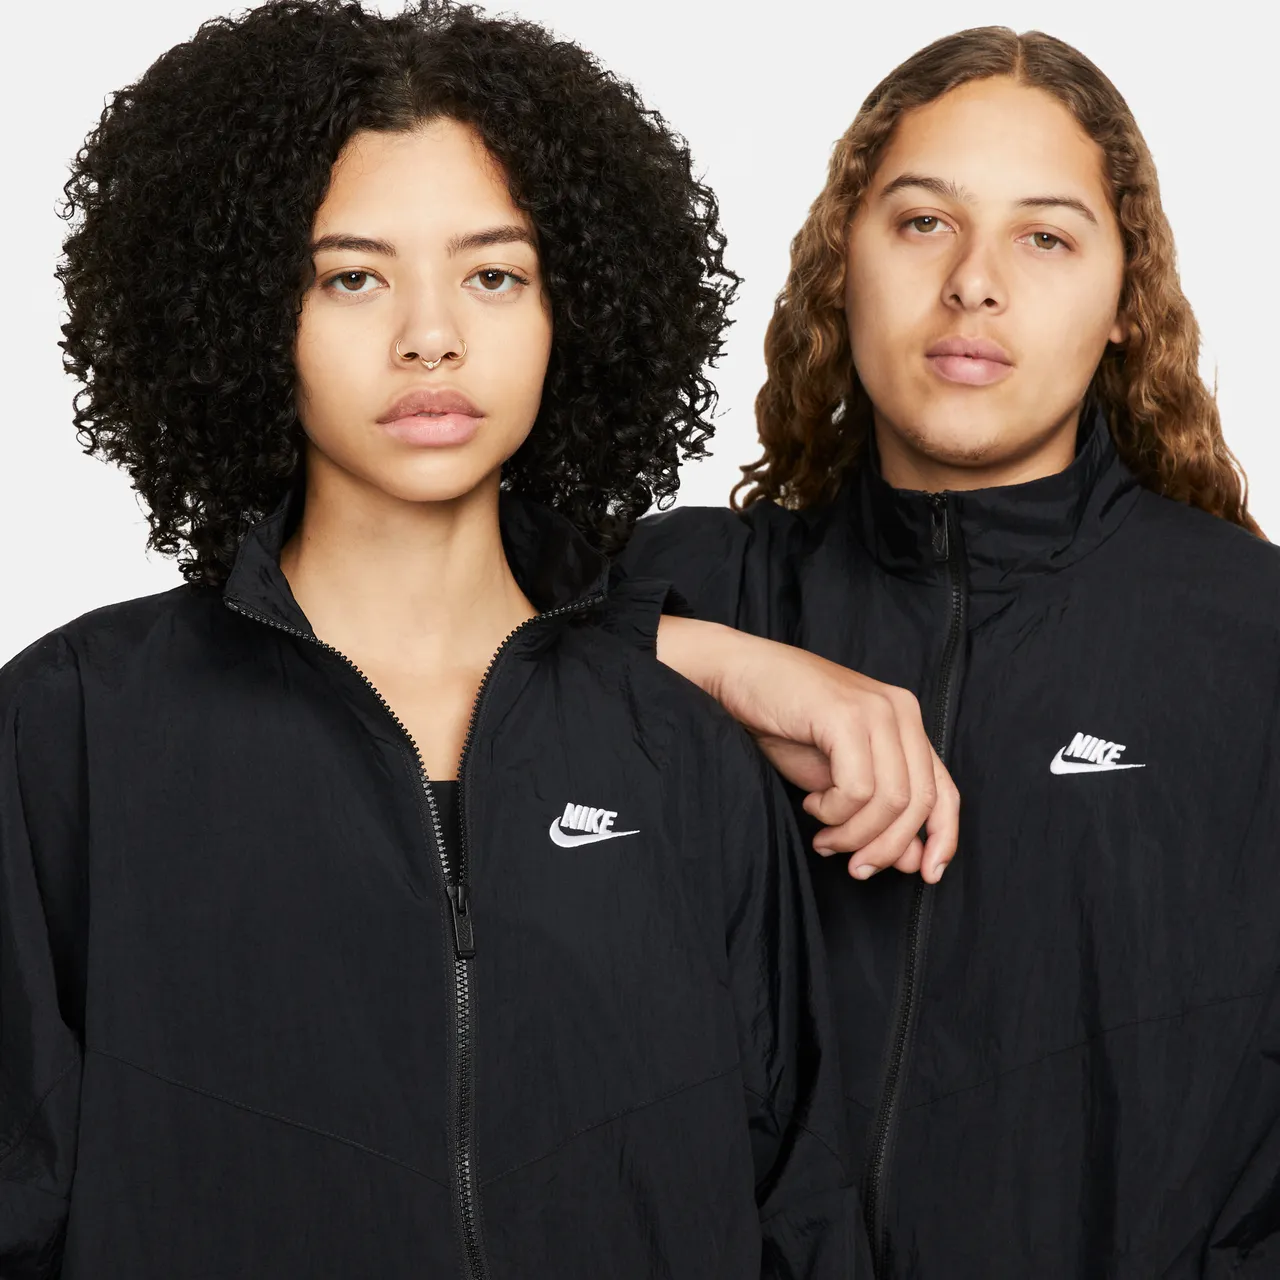 Nike Sportswear Essential Windrunner Women's Woven Jacket - Black - Polyester